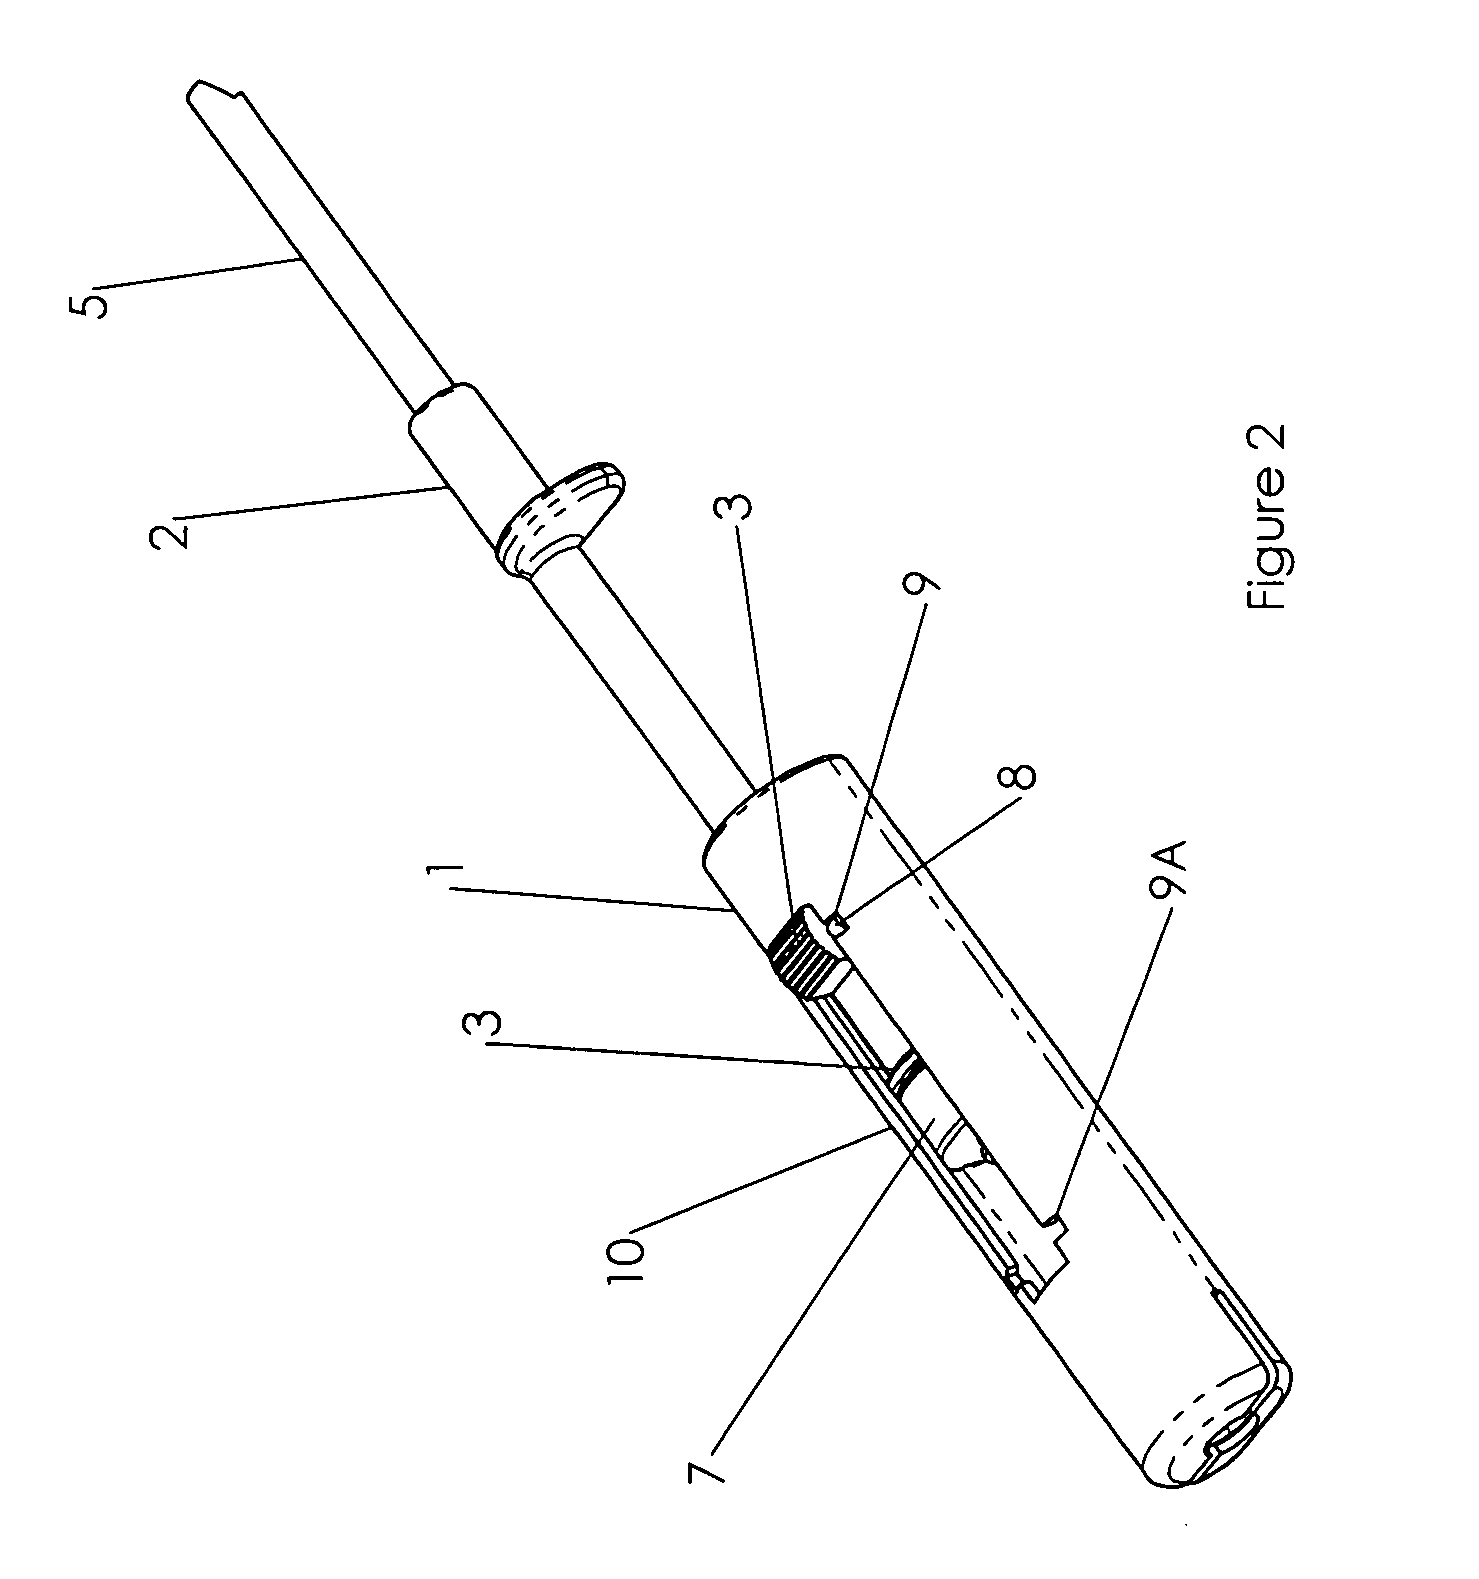 Intravenous catheter device